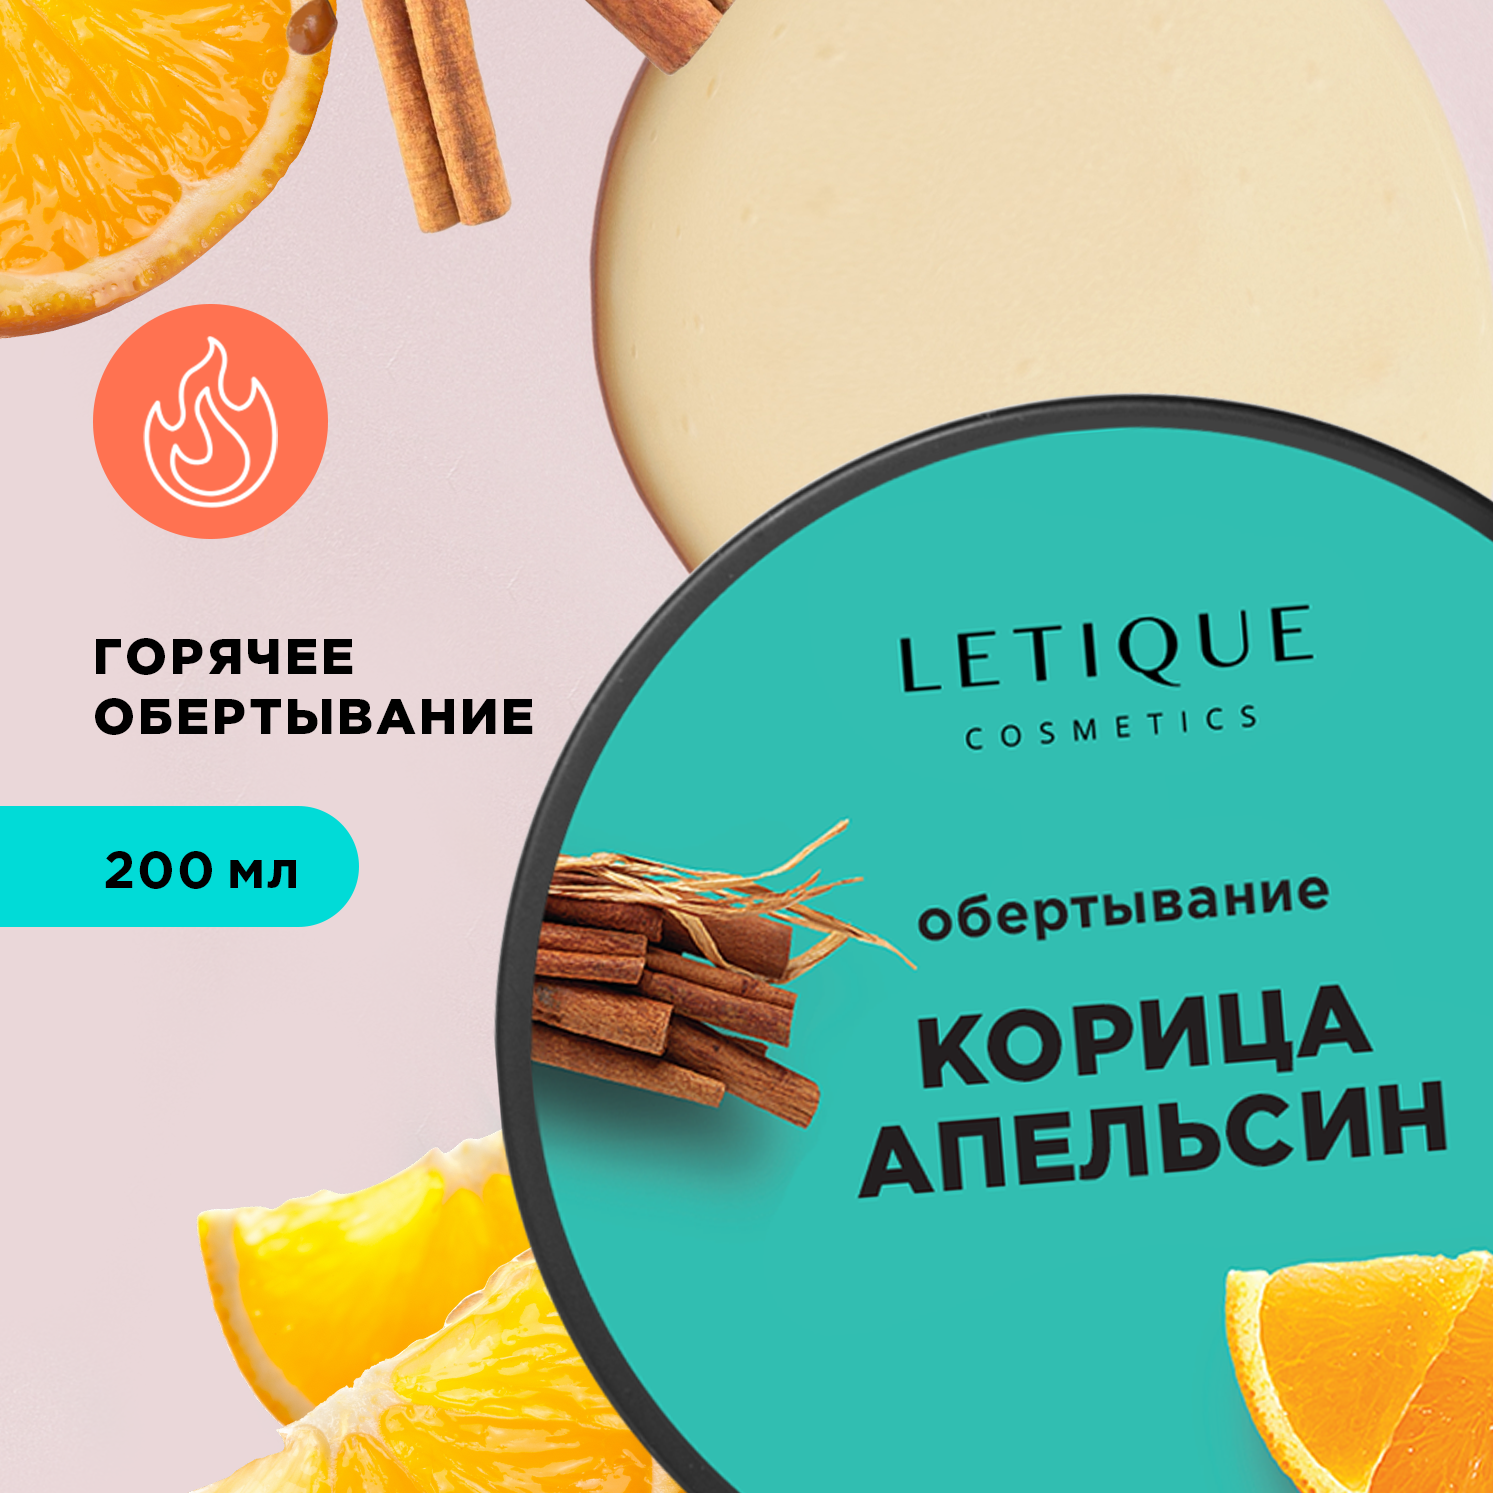 Letique Cosmetics Горячее обертывание с корицей и апельсином 200 мл